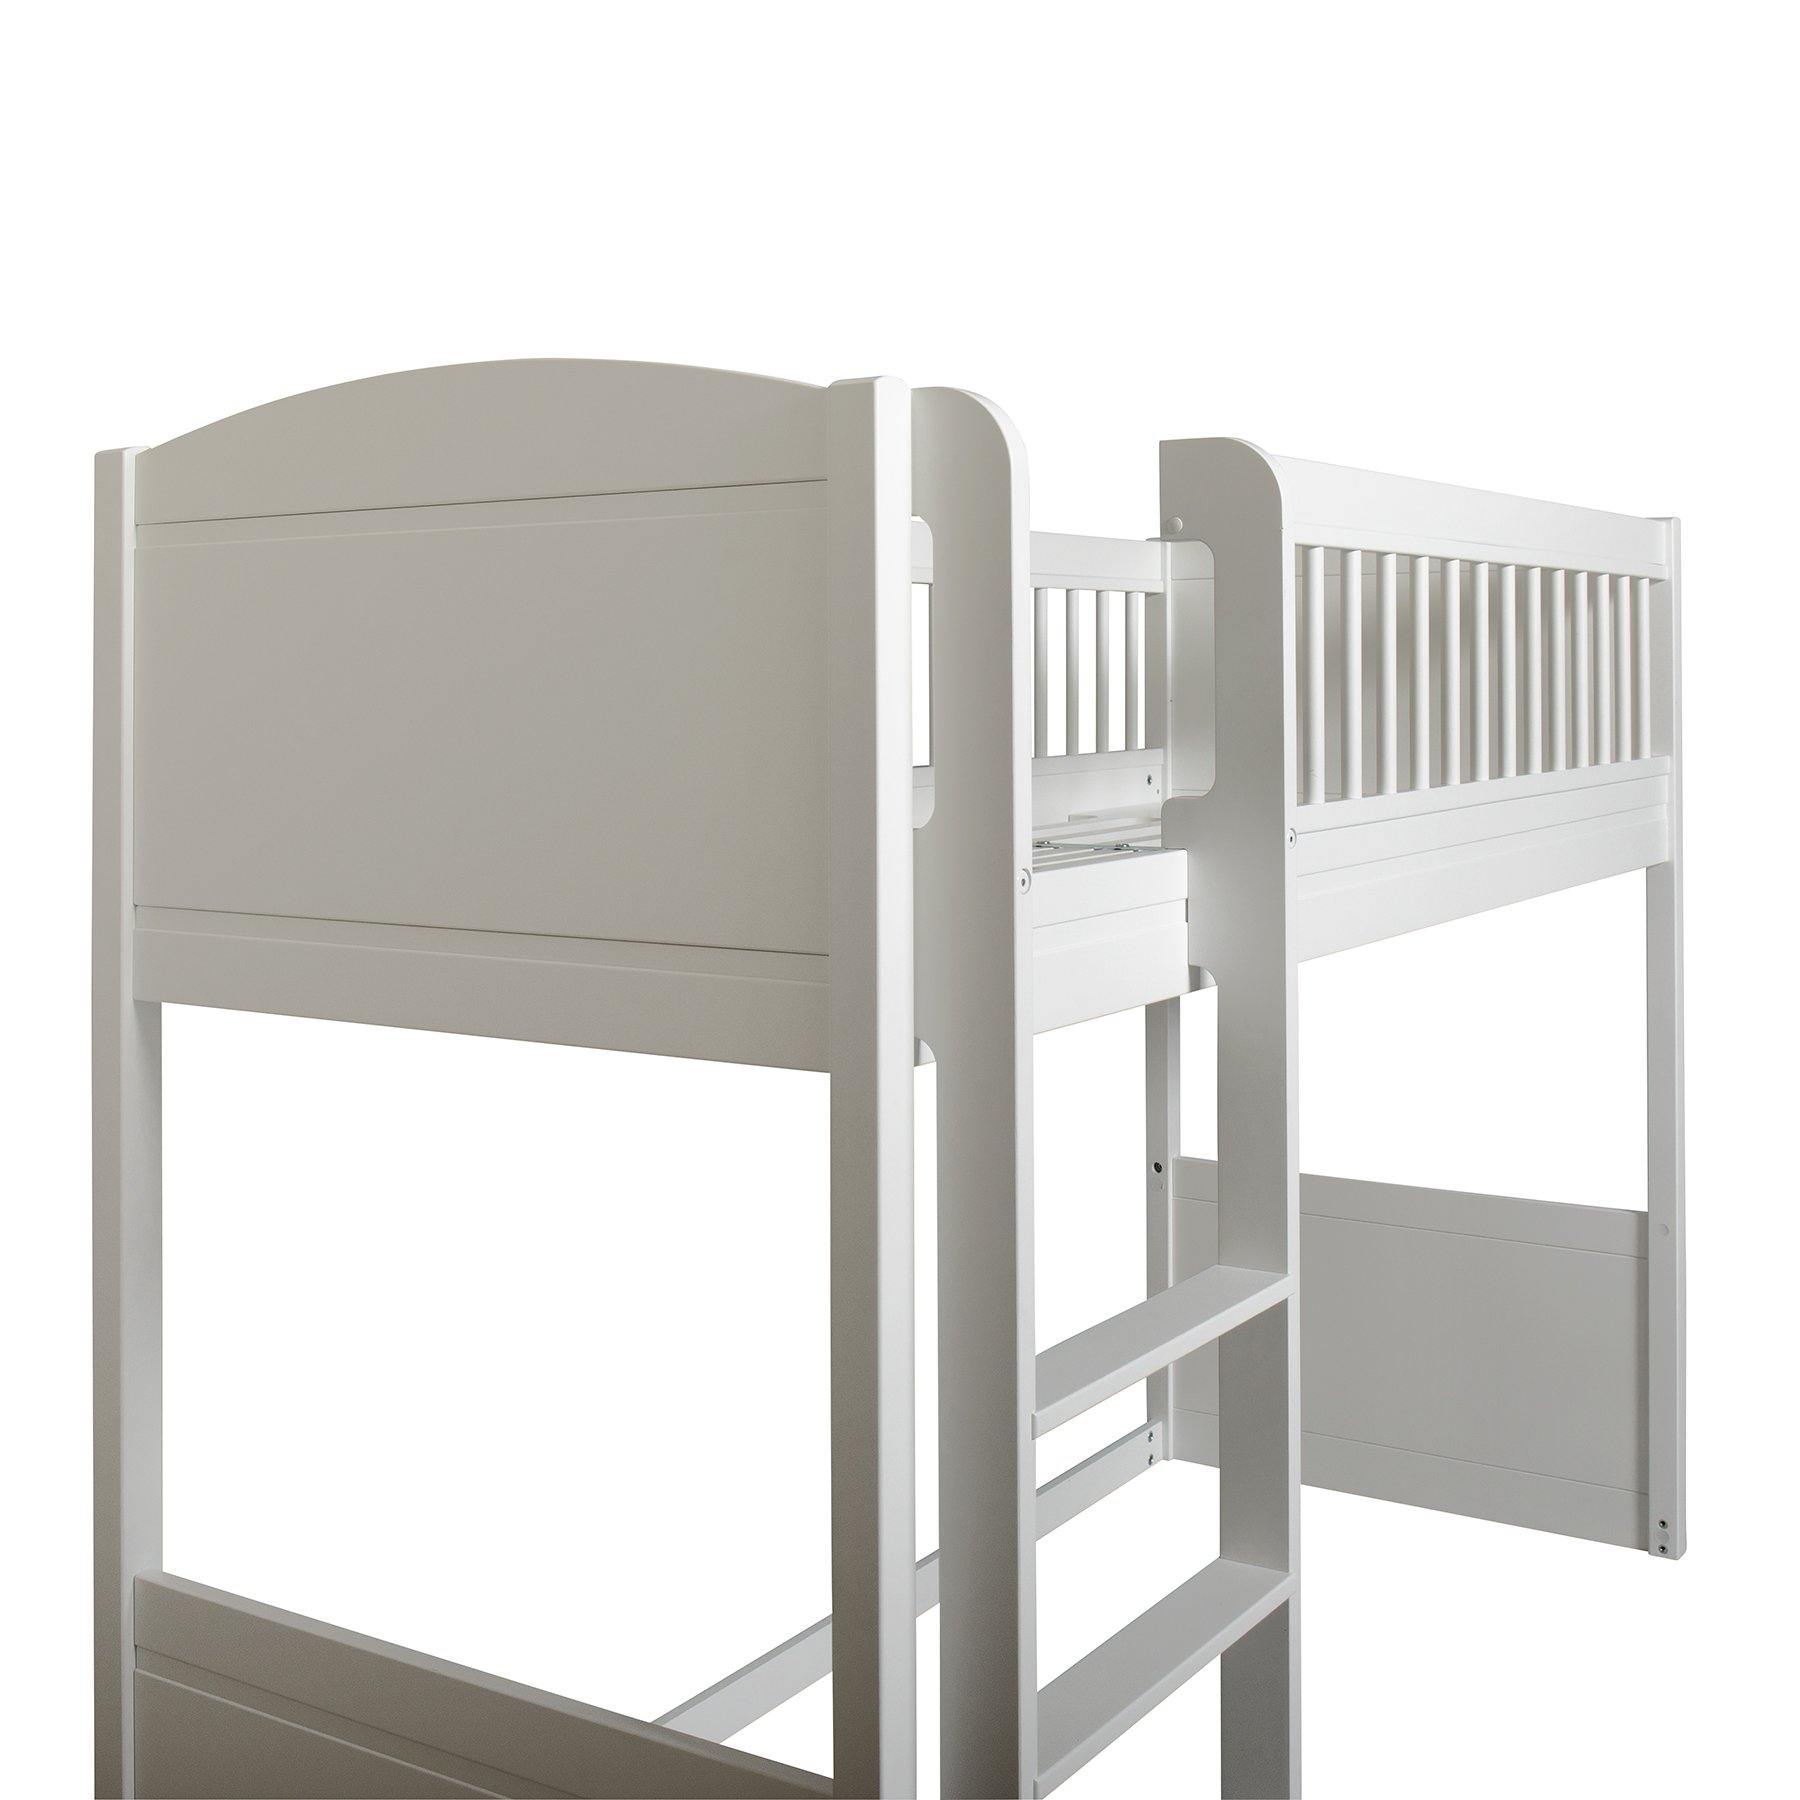 Oliver furniture Seaside Collection halbhohes Hochbett 68x168cm weiß